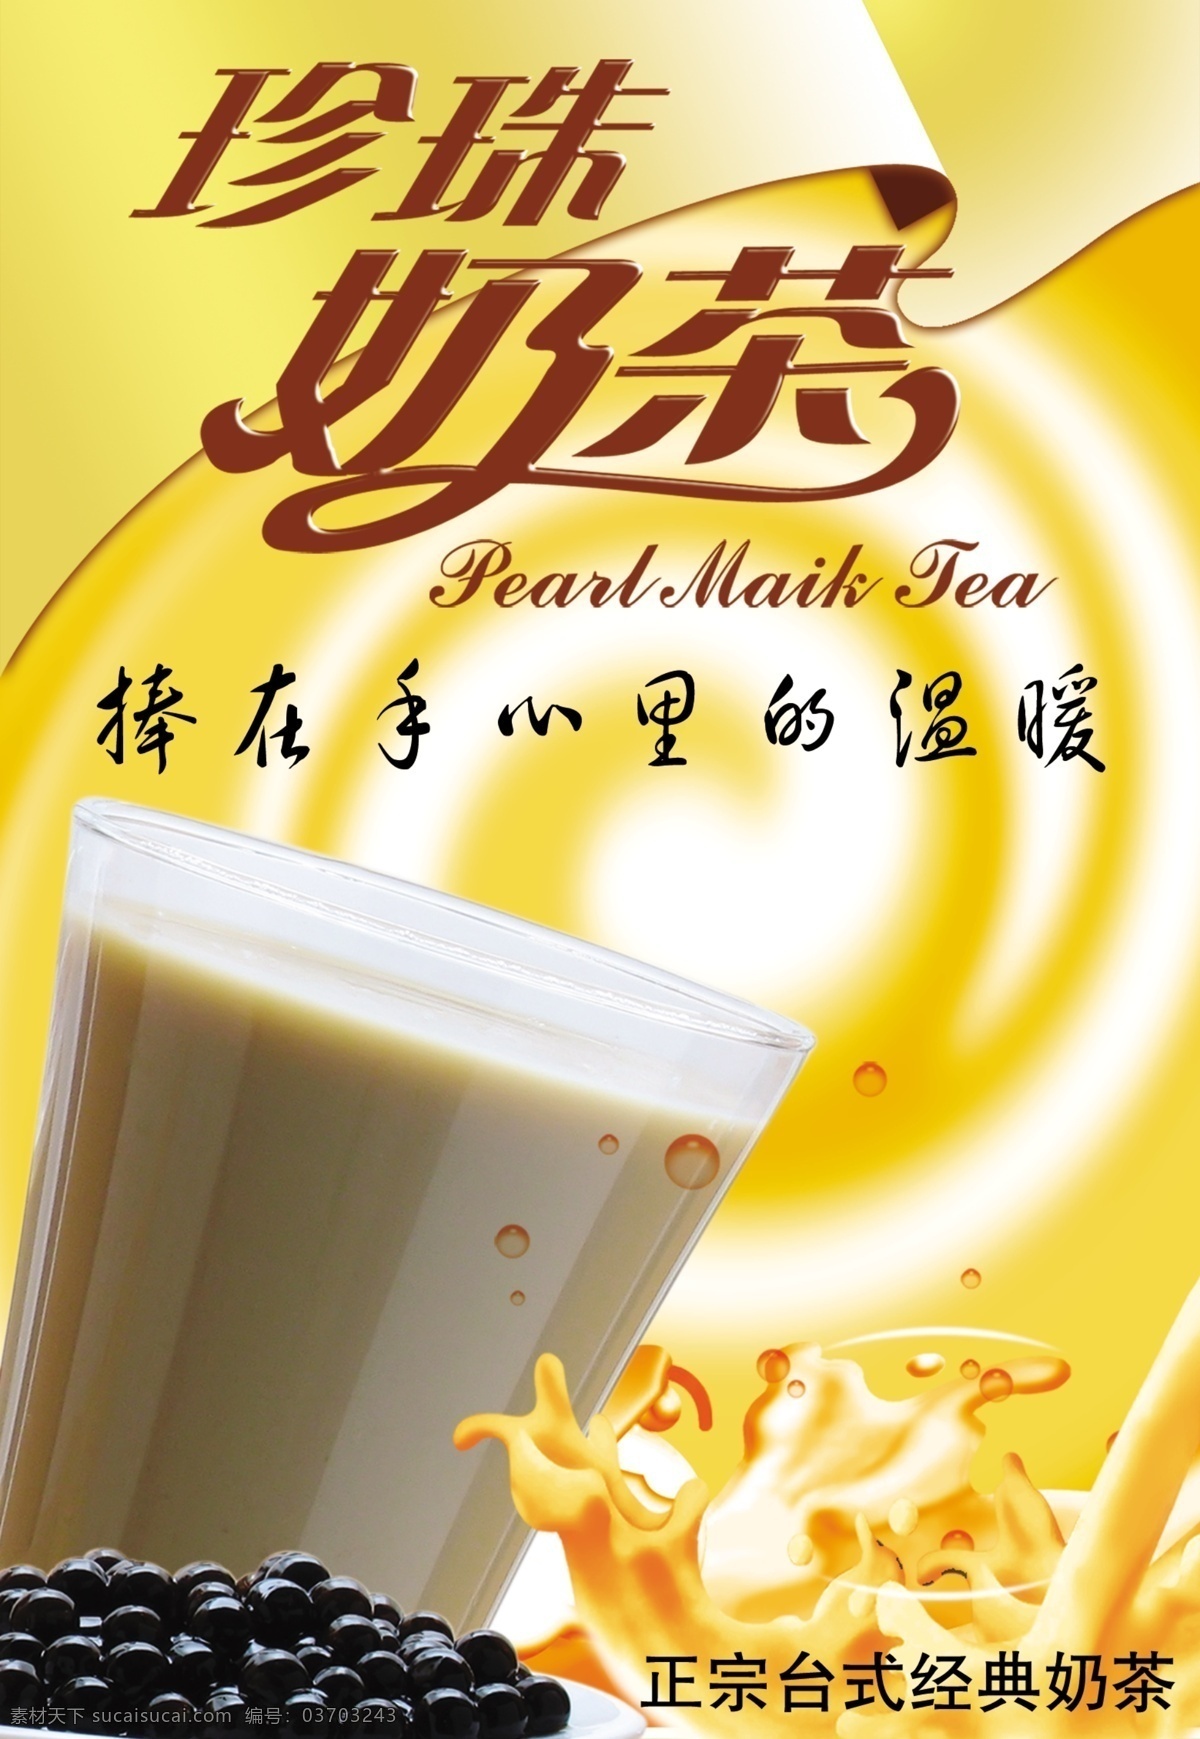 珍珠奶茶 台式经典奶茶 奶茶背景 广告设计模板 源文件